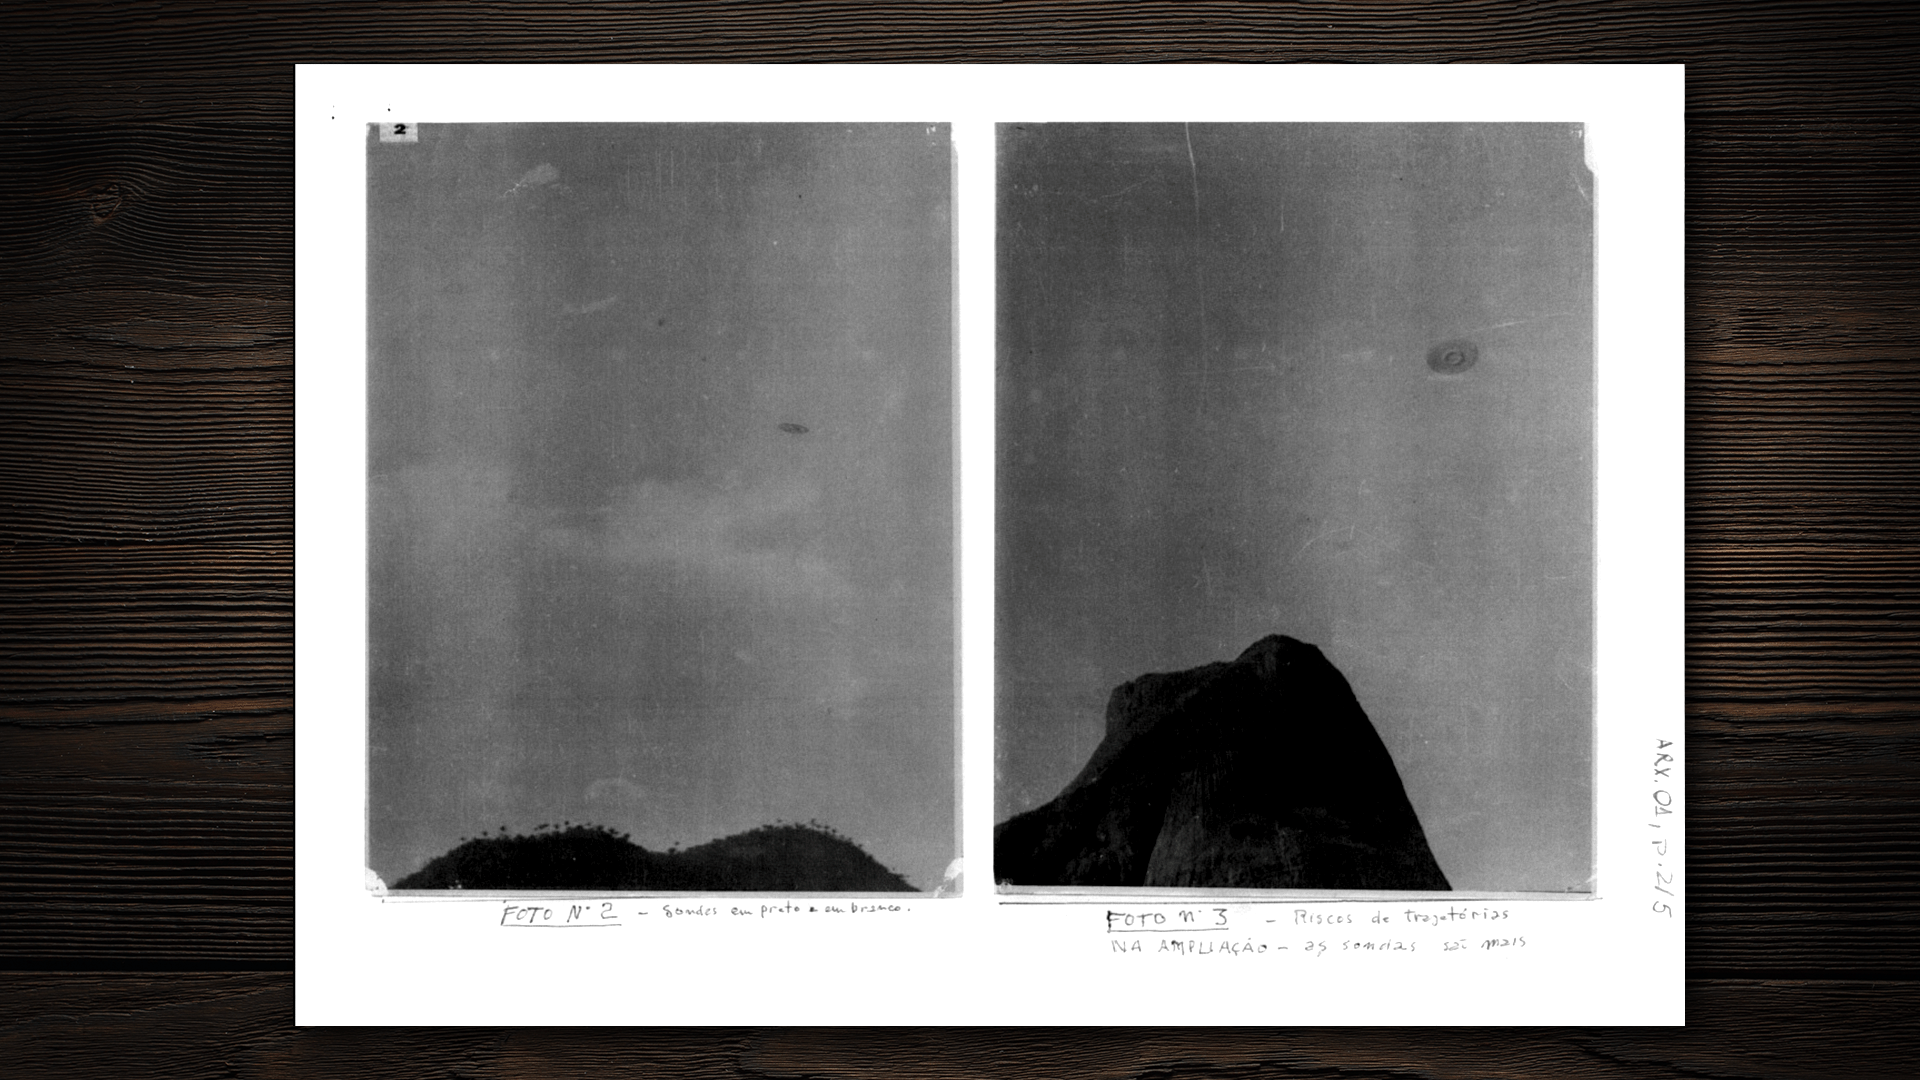 9.ago.2017 - Caso Barra da Tijuca, no Rio de Janeiro, em 1952: imagens entraram nos arquivos da Aeronáutica em 1954. Anos depois, o caso revelou-se uma fraude - Arte/UOL